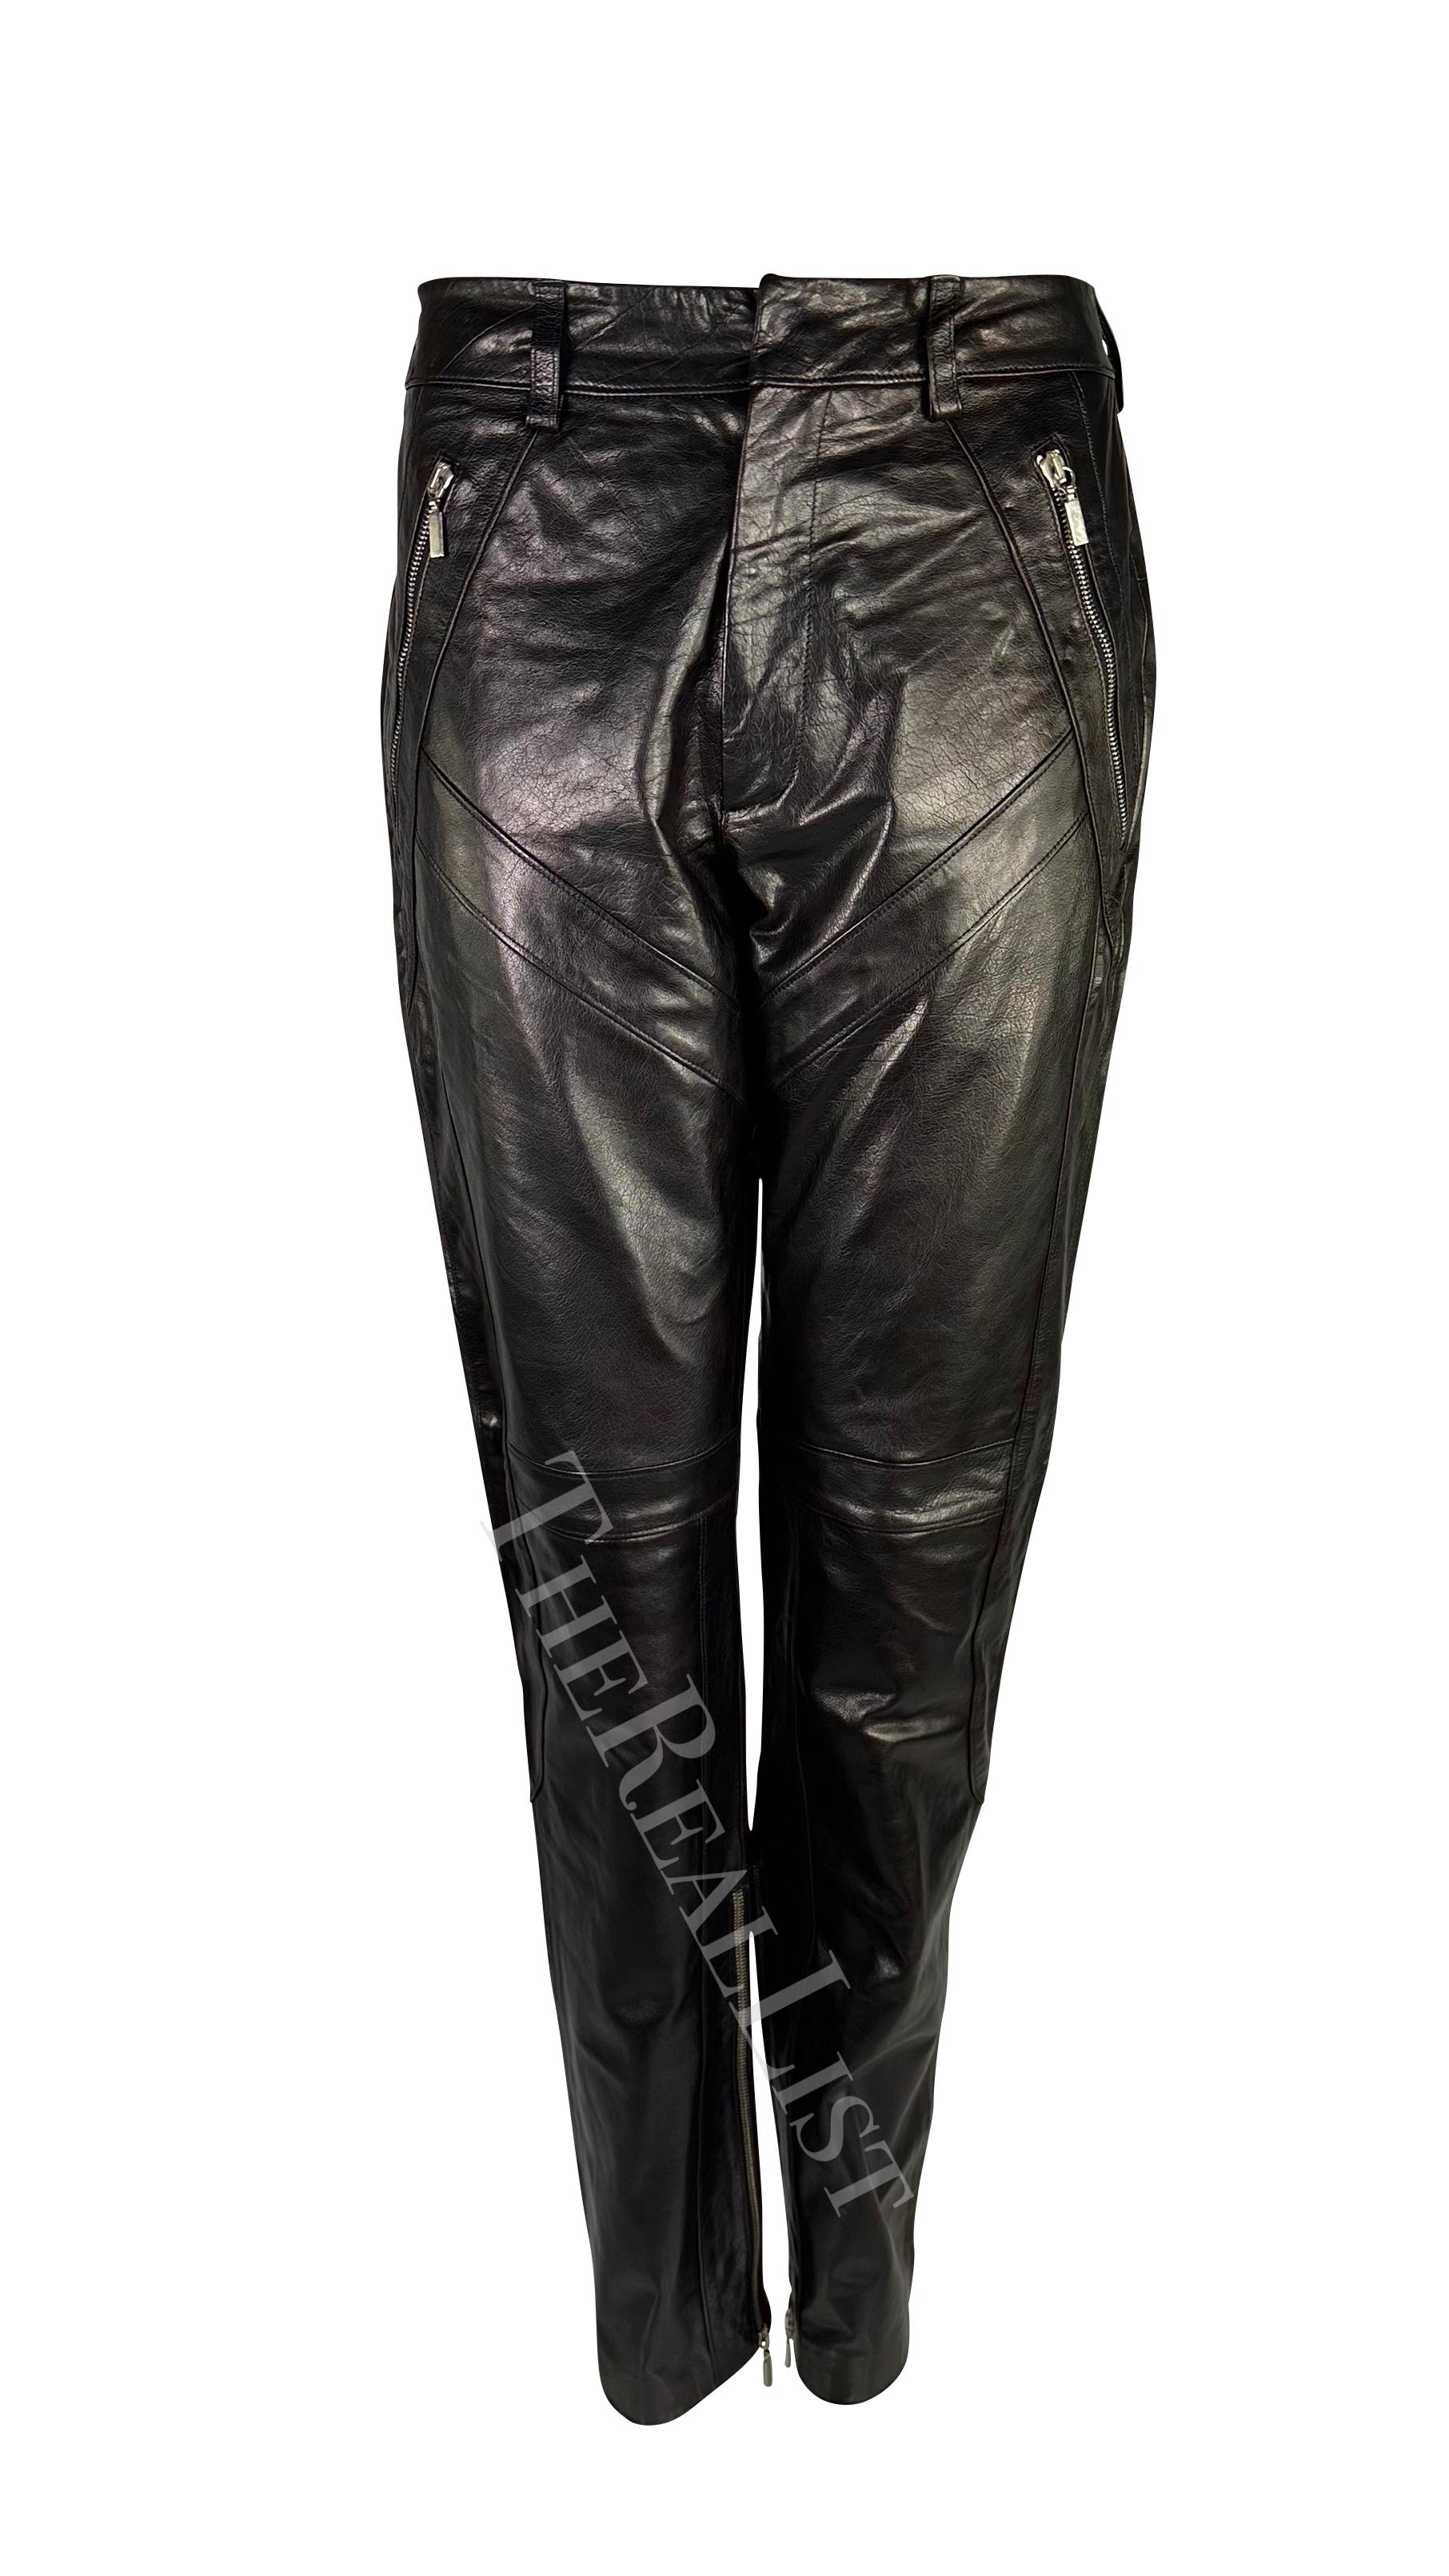 S/S 2002 Gianni Versace for Donatella Versace - Pantalon zippé en cuir noir style moto Excellent état - En vente à West Hollywood, CA